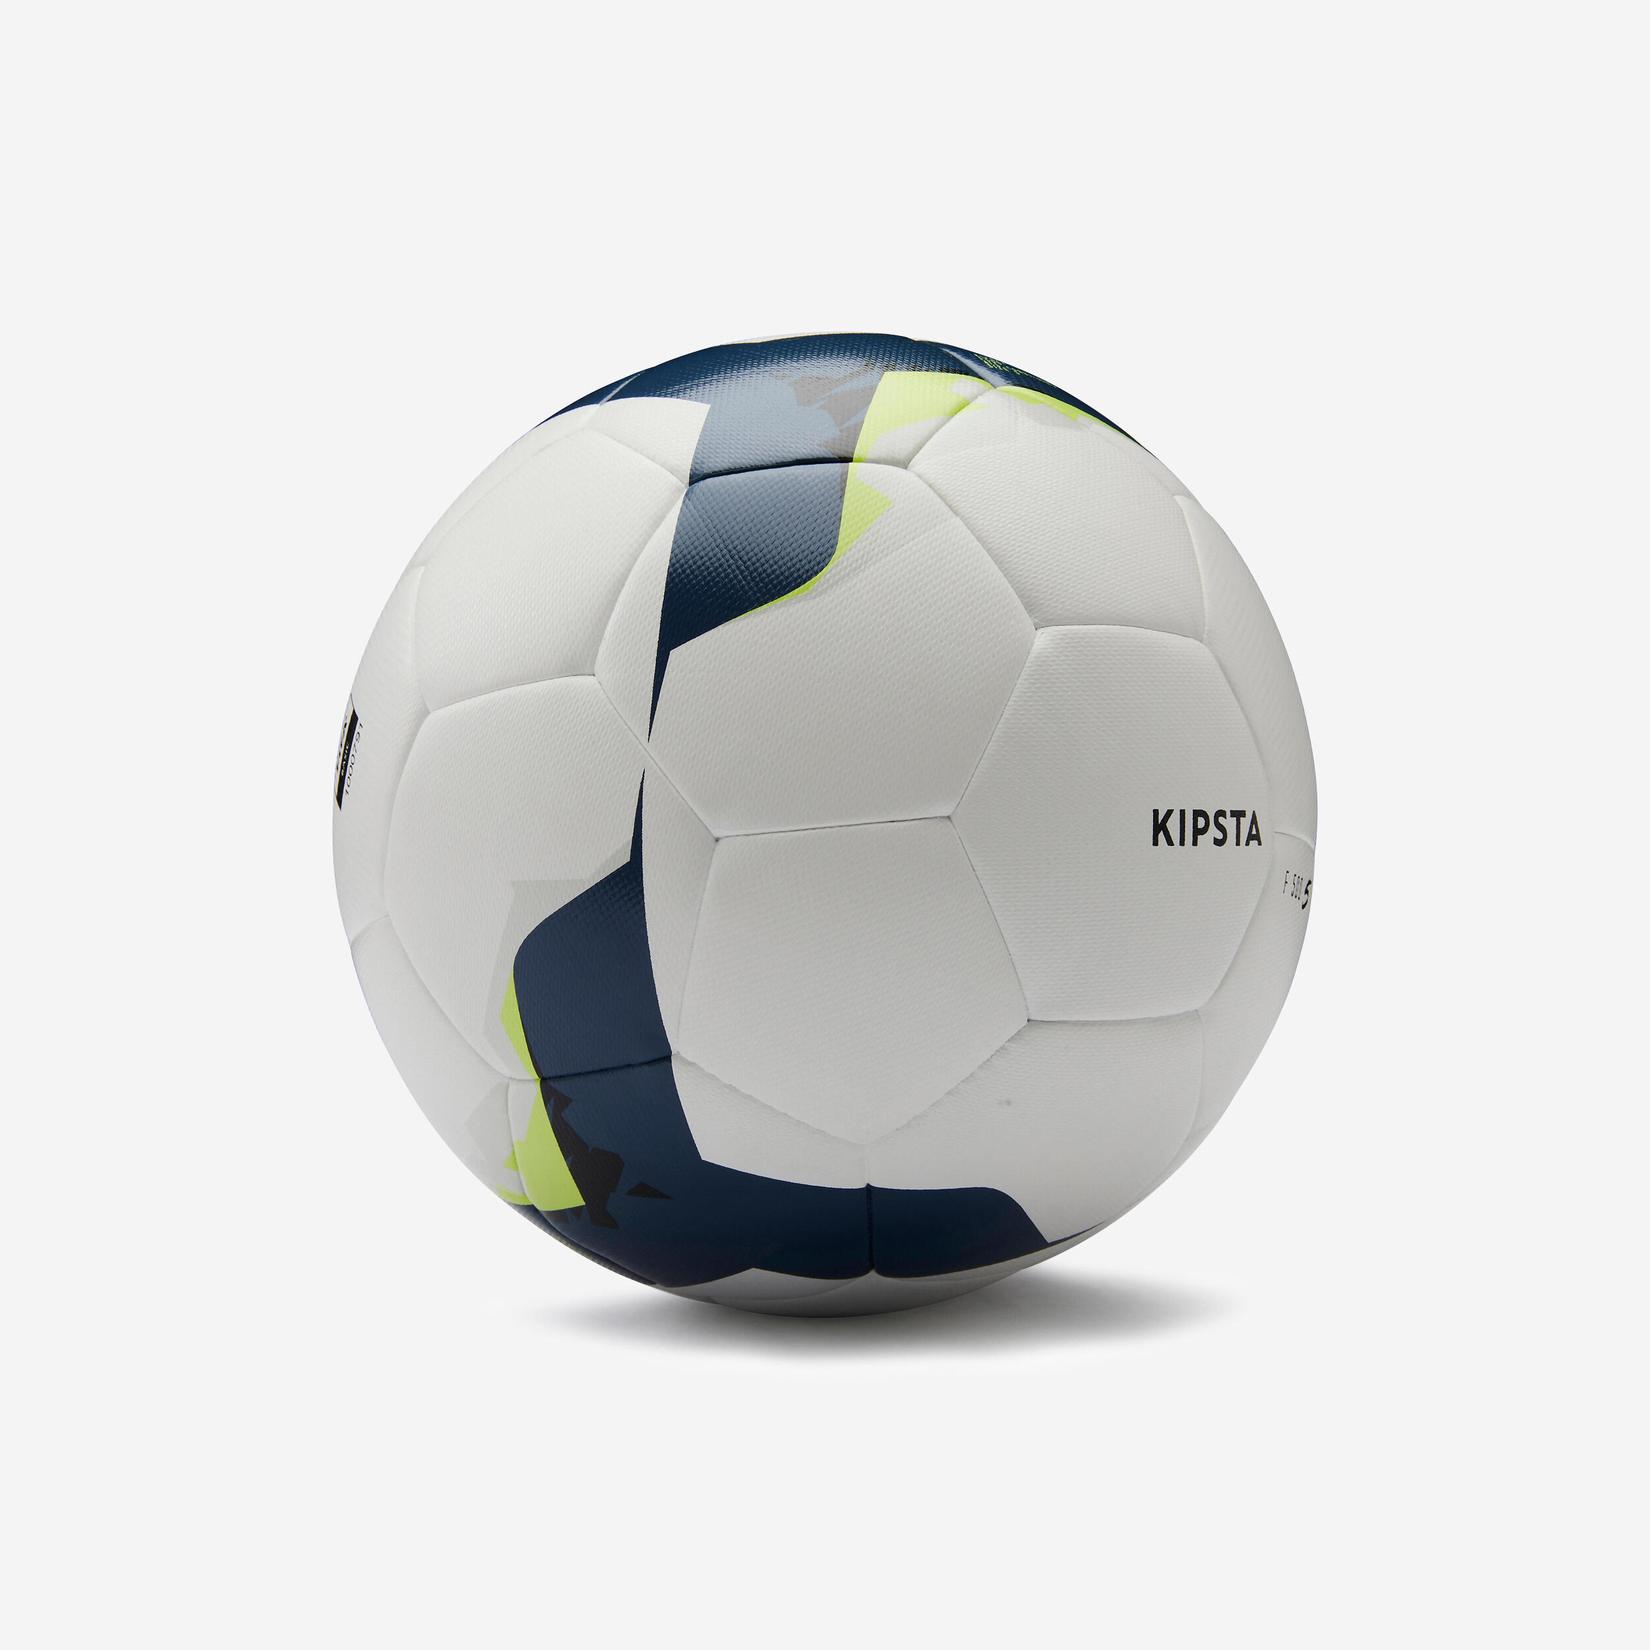 Oferta de Balón de fútbol FIFA Basic híbrido talla 5 Kipsta F500 blanco por $66000 en Decathlon